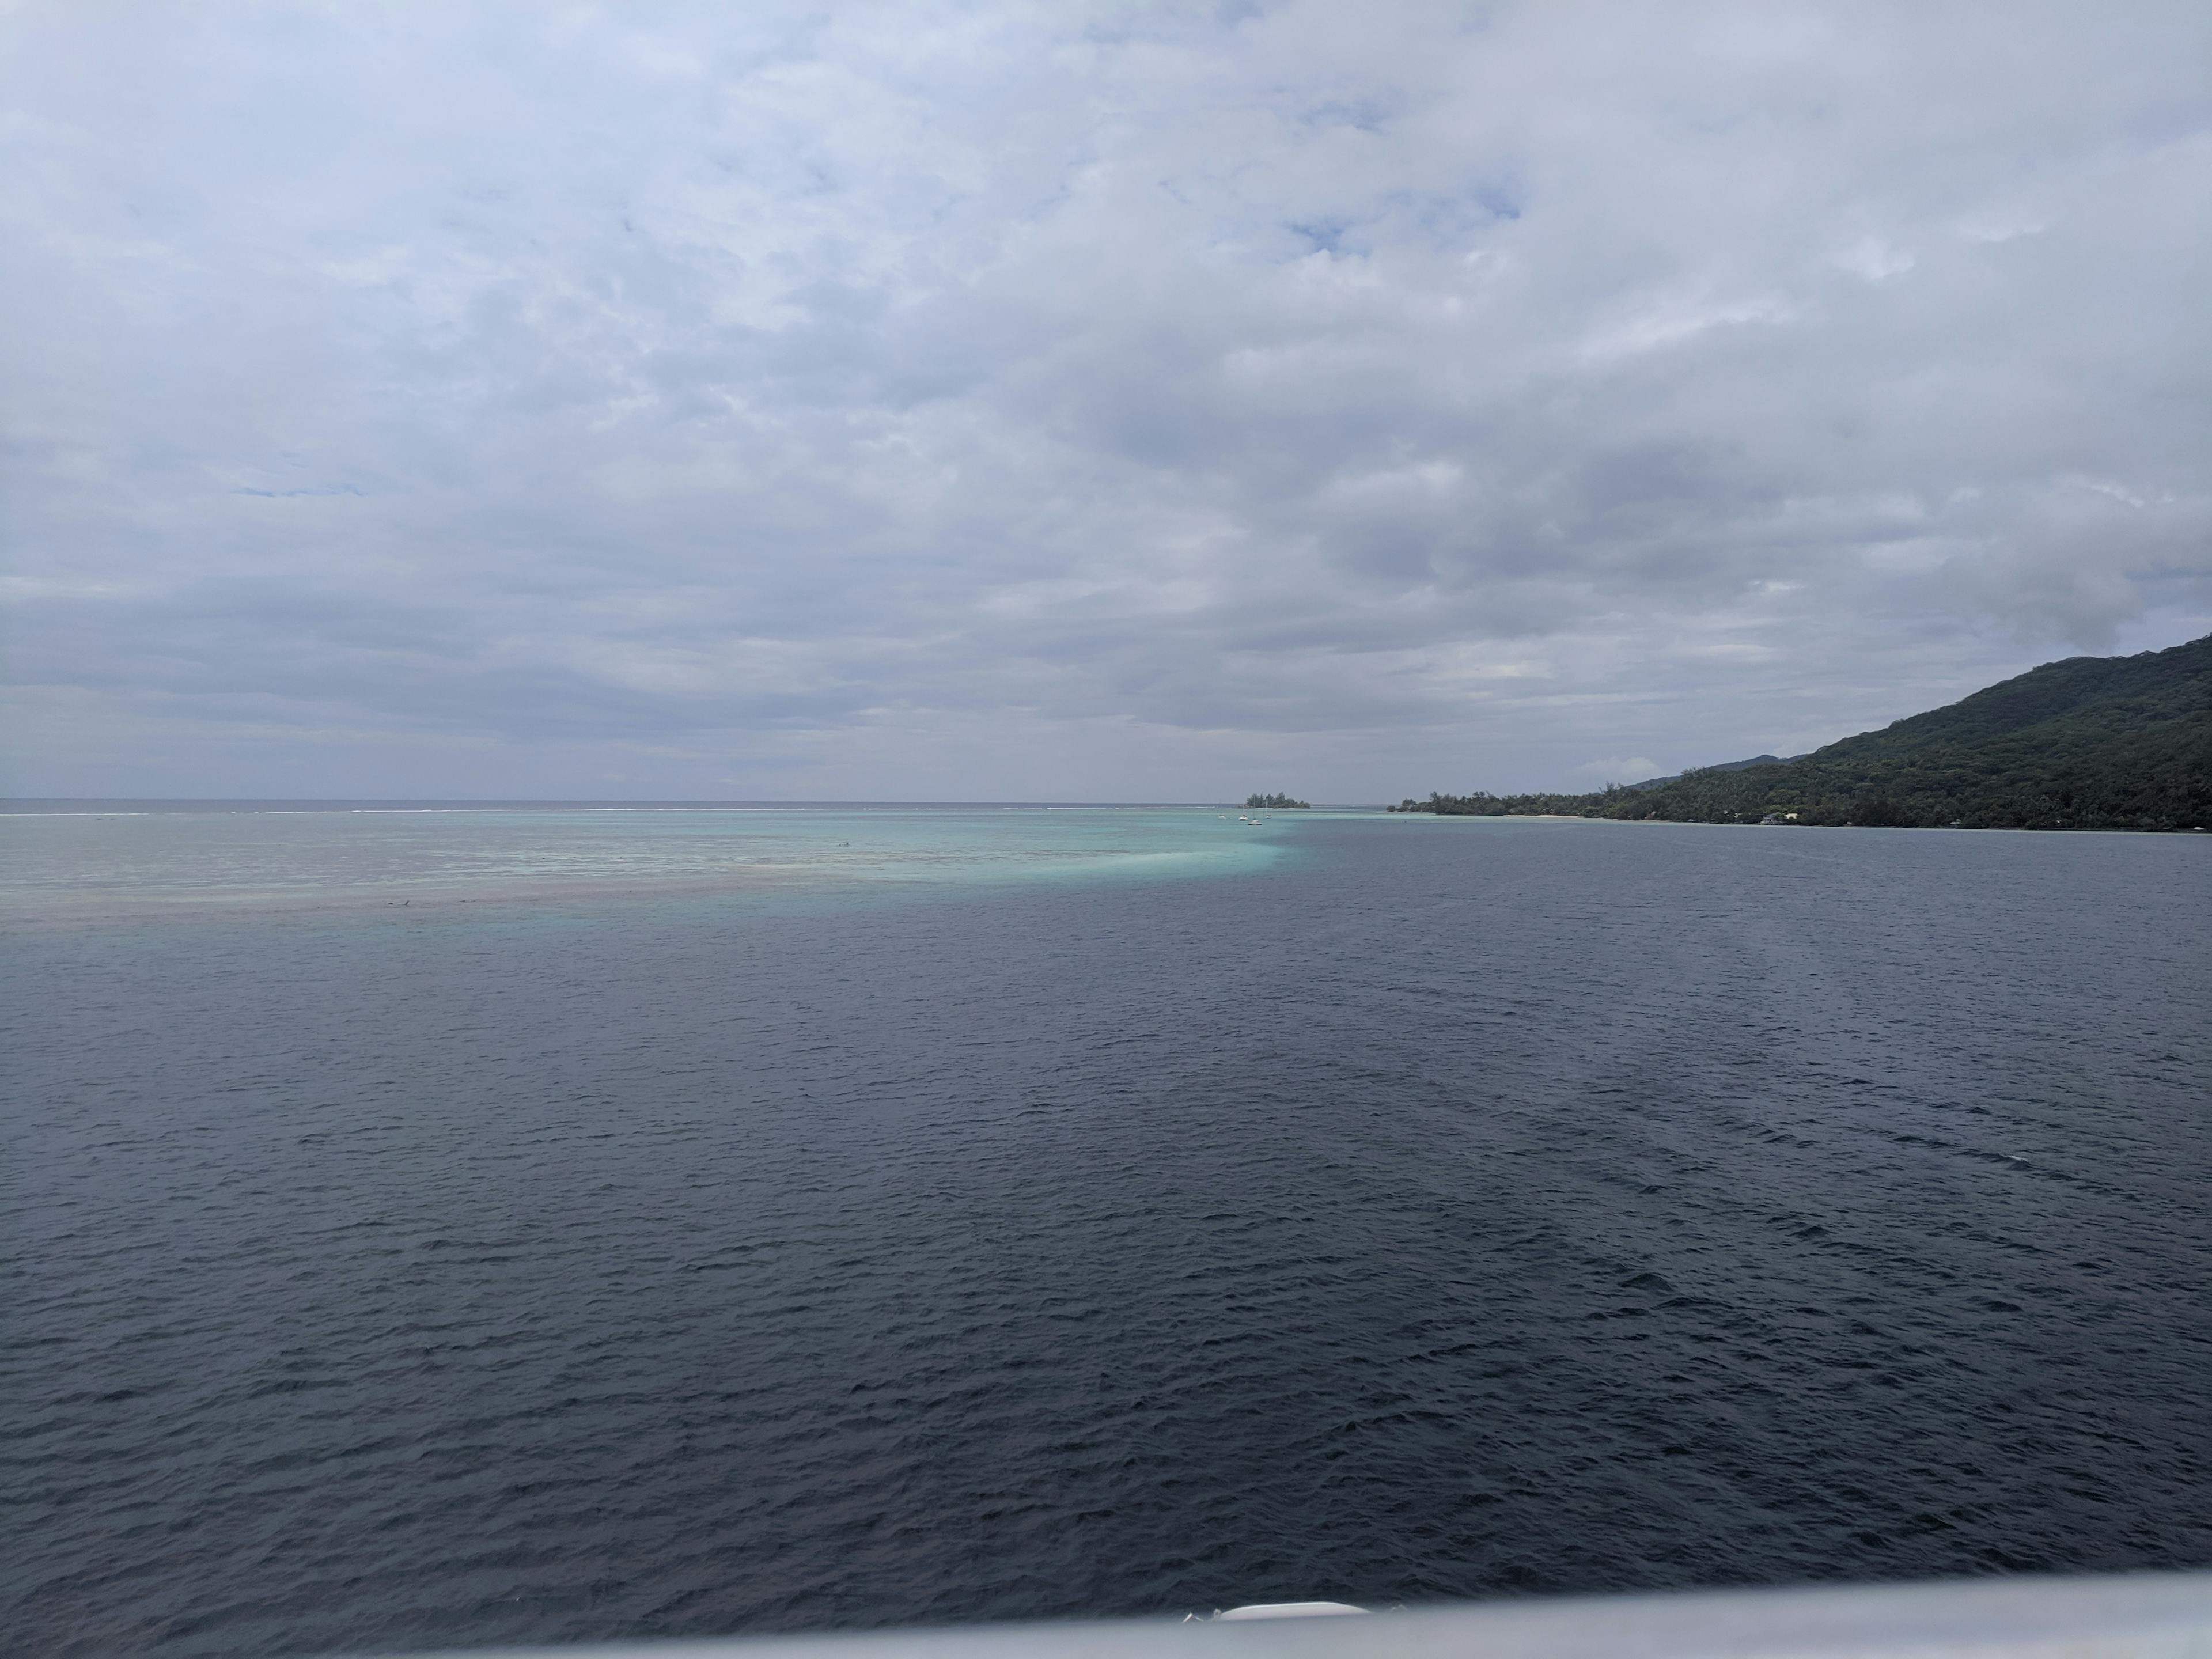 Blue seas off the coast of Mo’orea